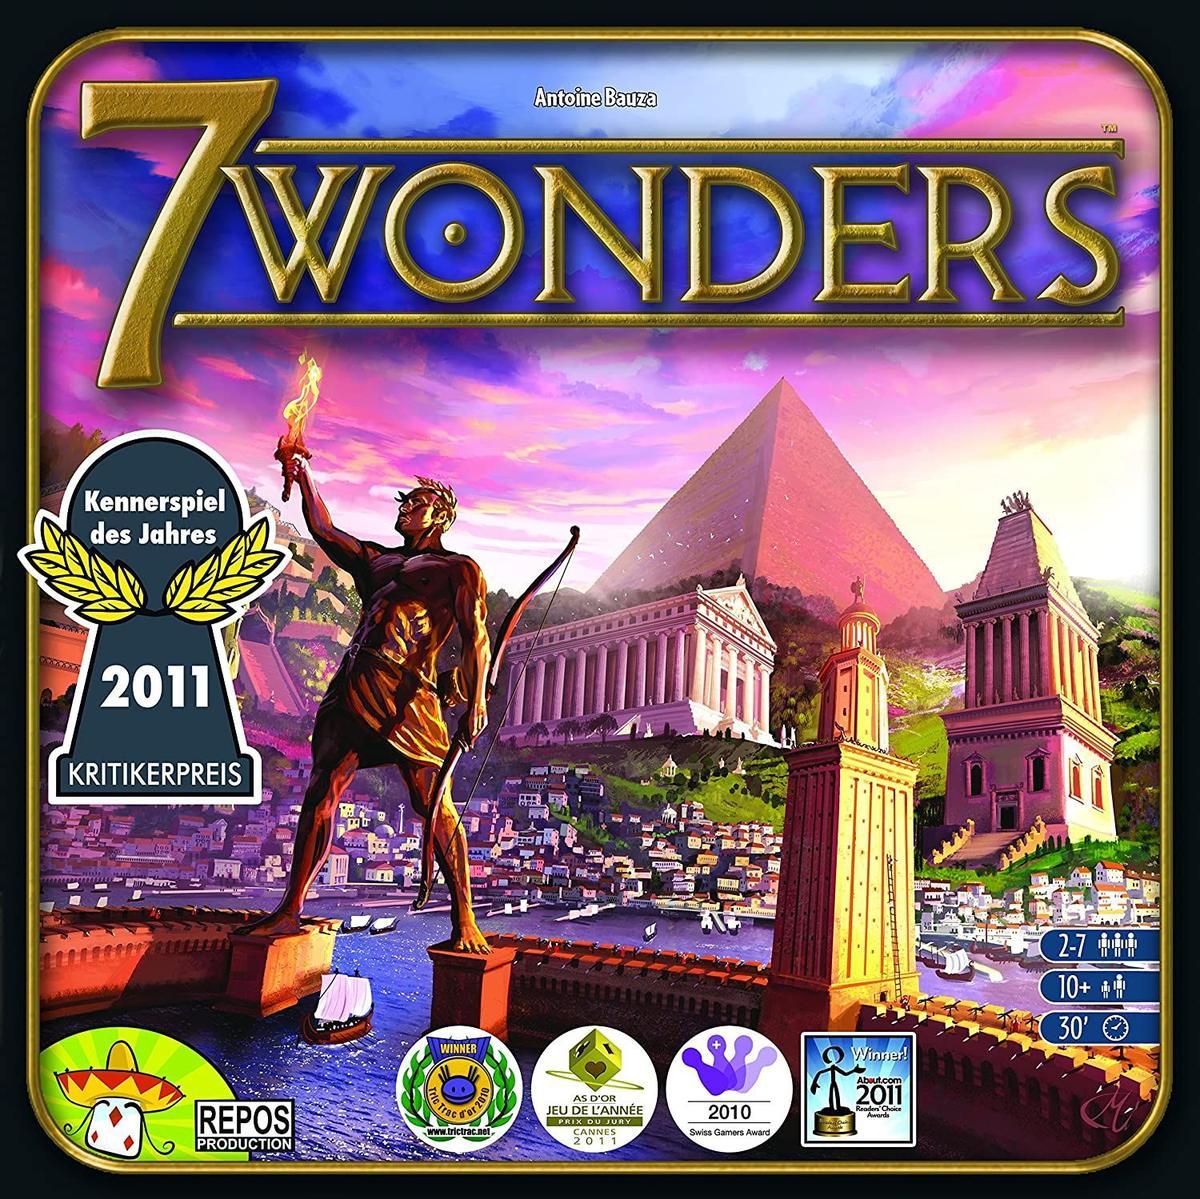 7 Wonders (Precio: 34,61 euros)